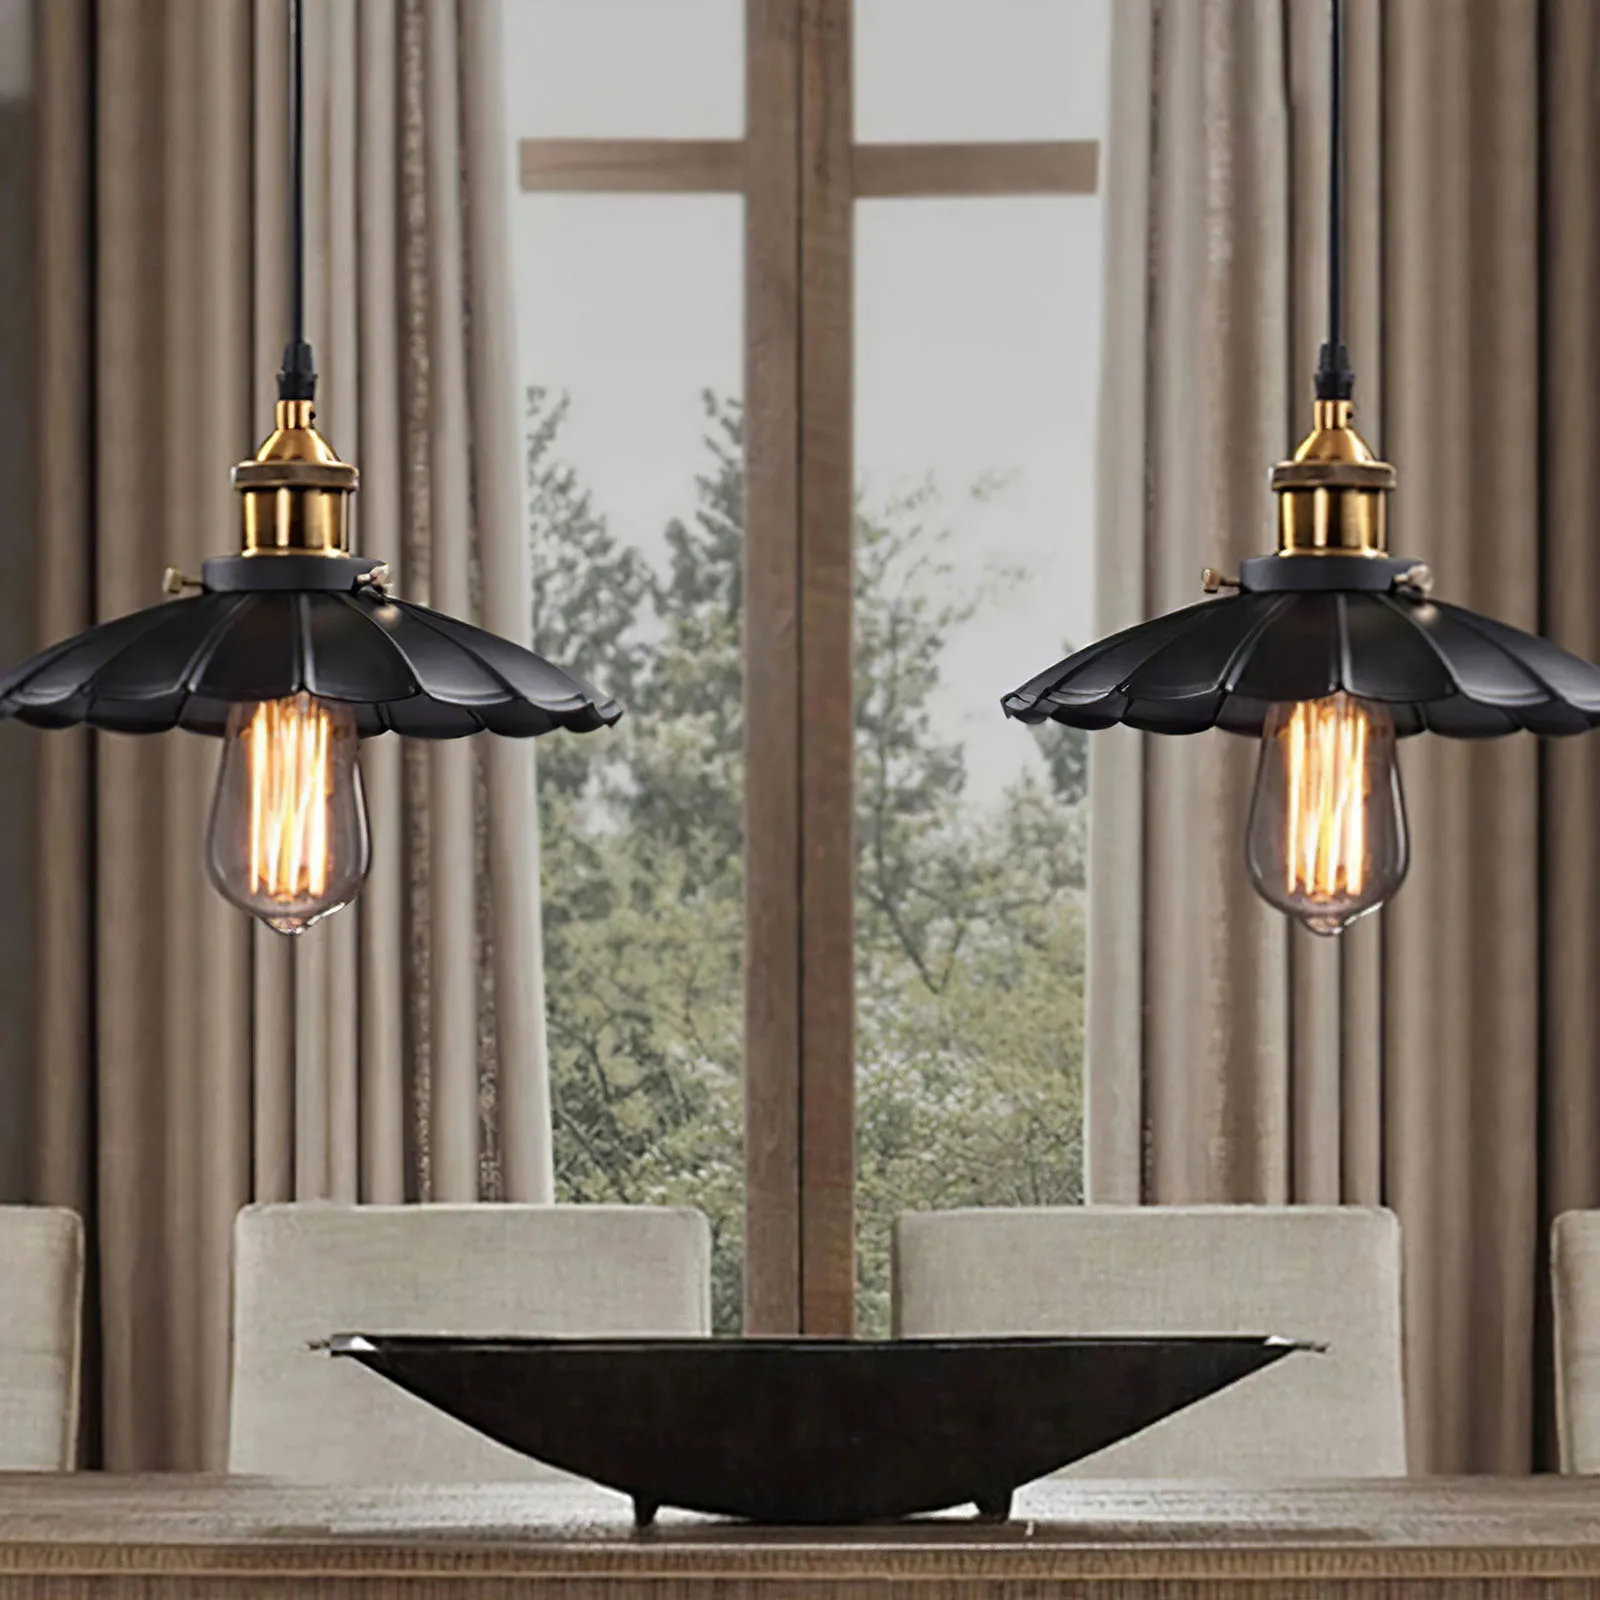 

Люстра с абажуром и окрашенным потолочным светильником В индустриальном стиле, Ретро лампа с абажуром в виде листьев лотоса для ресторана